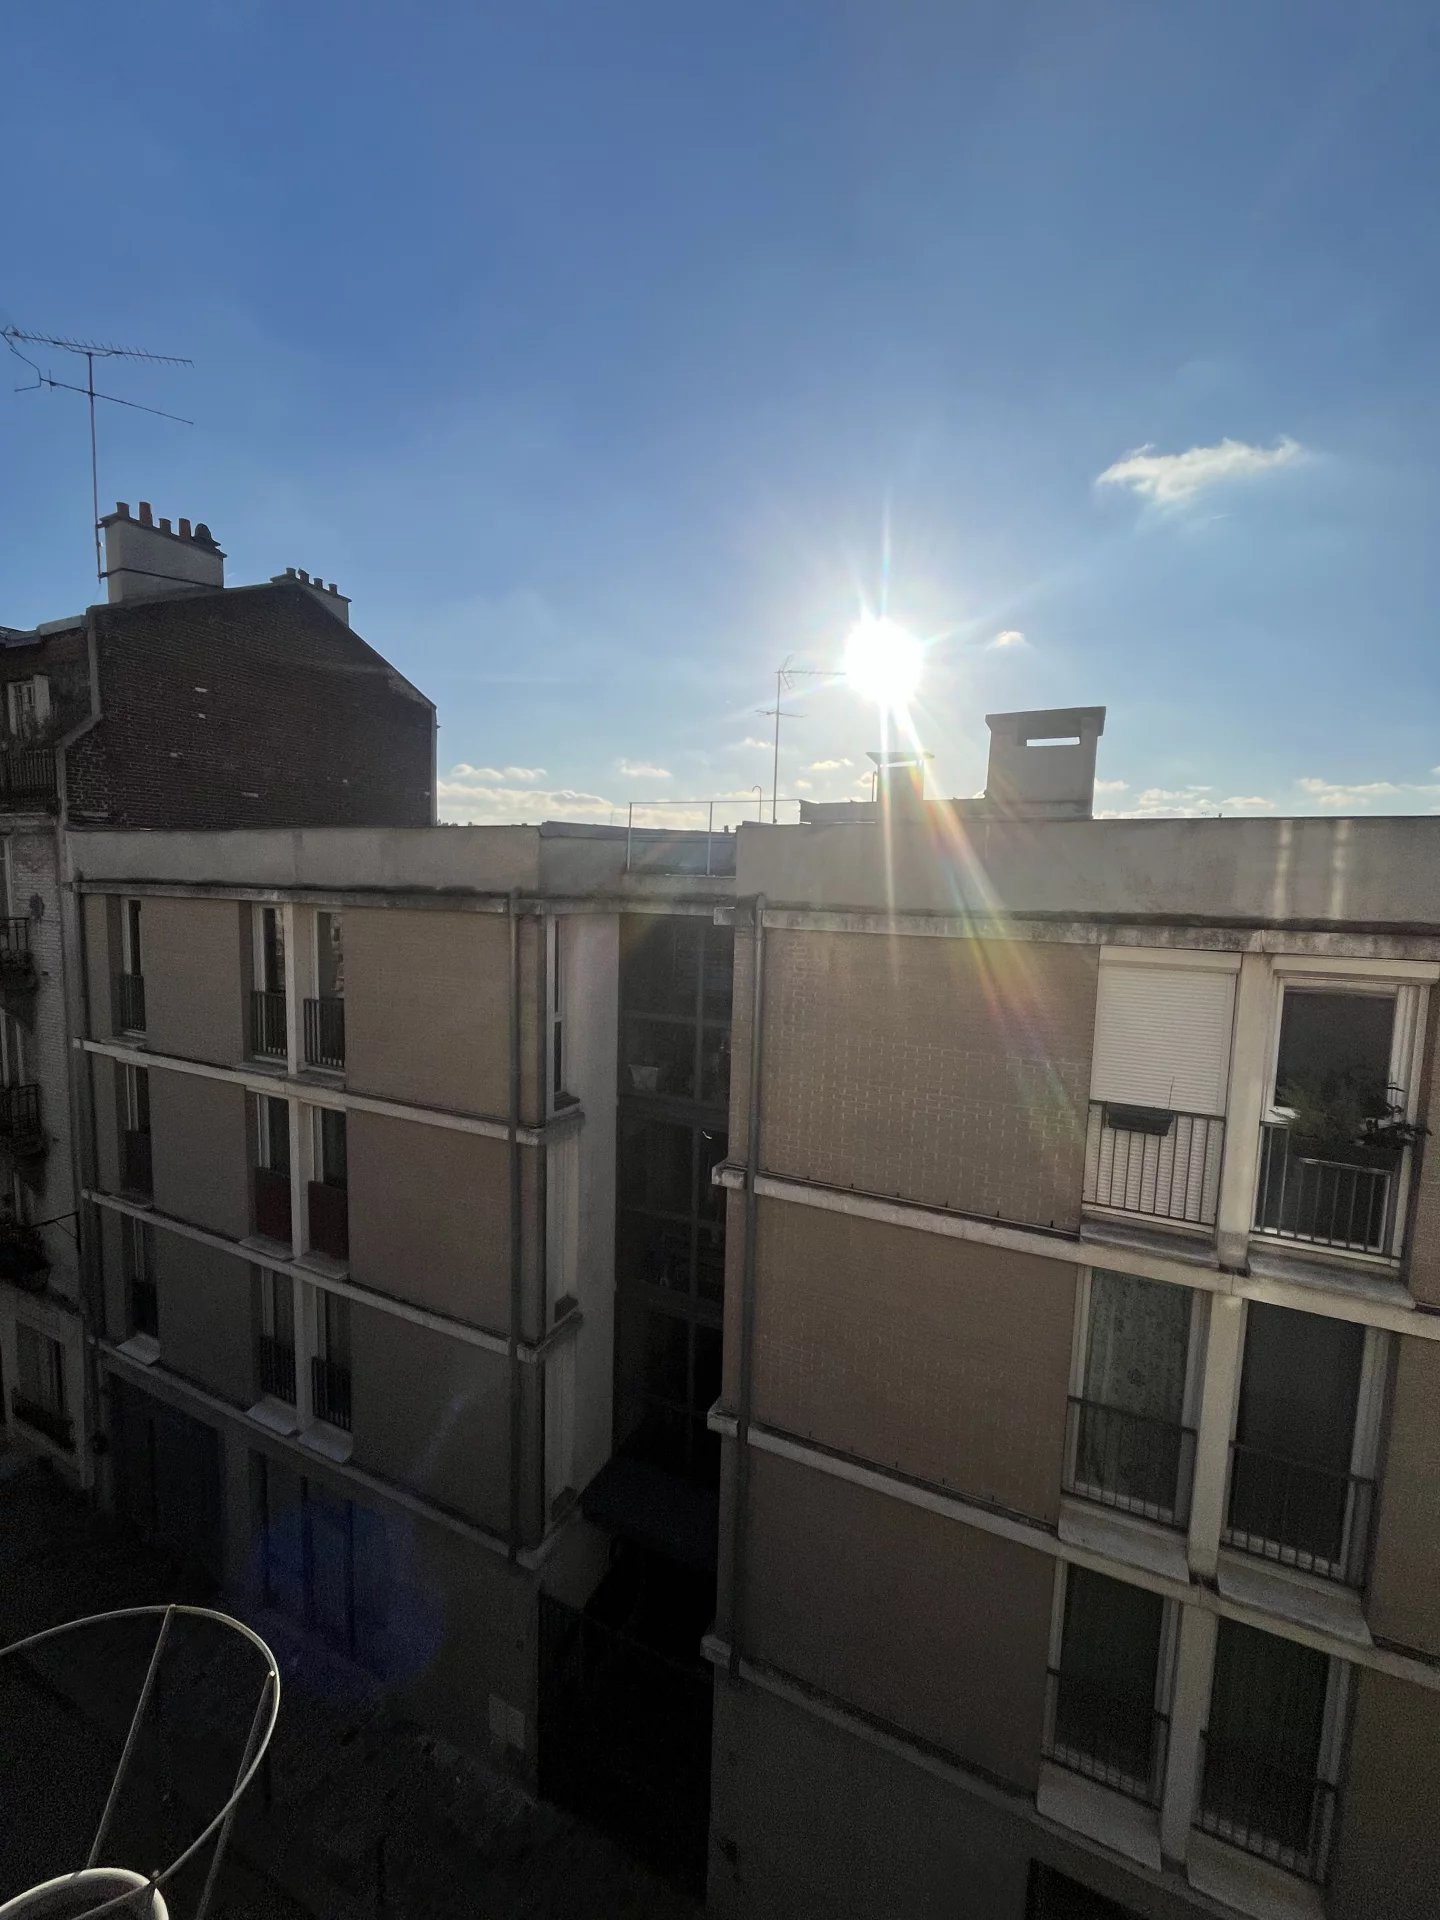 Vente Appartement - Paris 20ème Charonne